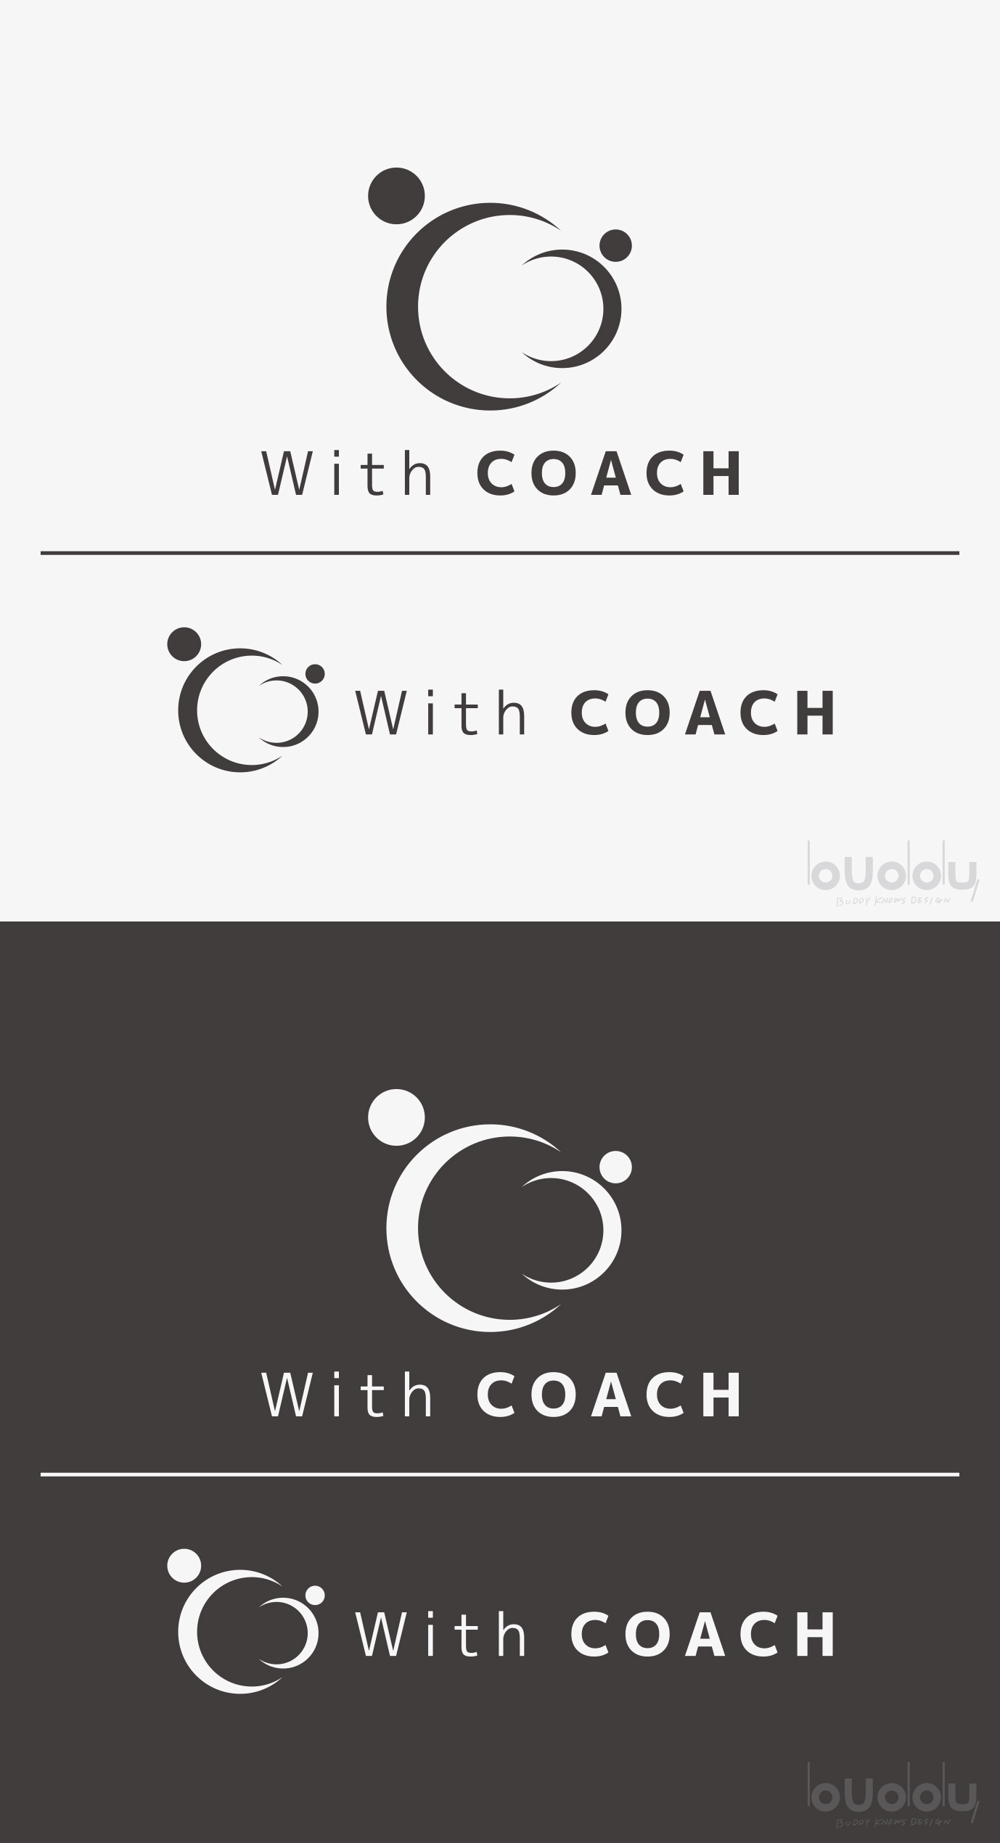 【ロゴの作成】講師のチーム「with コーチ」新規立ち上げに伴うデザインの依頼